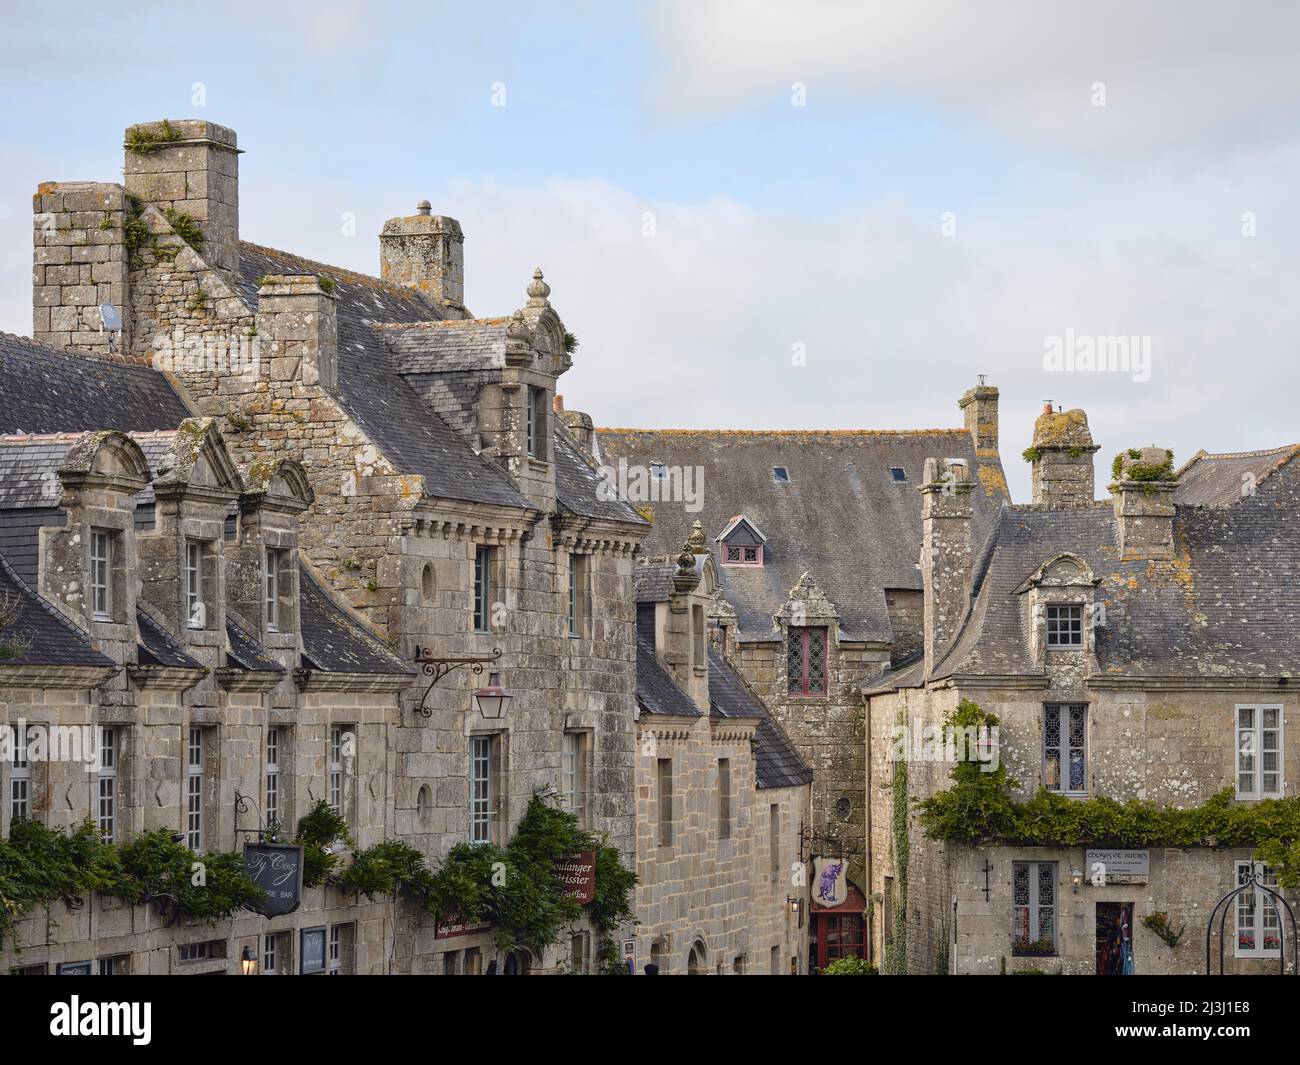 Fassaden von Häusern im Dorf Locronan im Departement Finistère in der Bretagne. Die Häuser wurden aus Granit gebaut und stammen aus dem 17.. Jahrhundert. Locronans historische Kulisse ist in vielen Film- und Fernsehproduktionen zu sehen. Locronan ist ein sehr beliebtes Ausflugsziel. Stockfoto